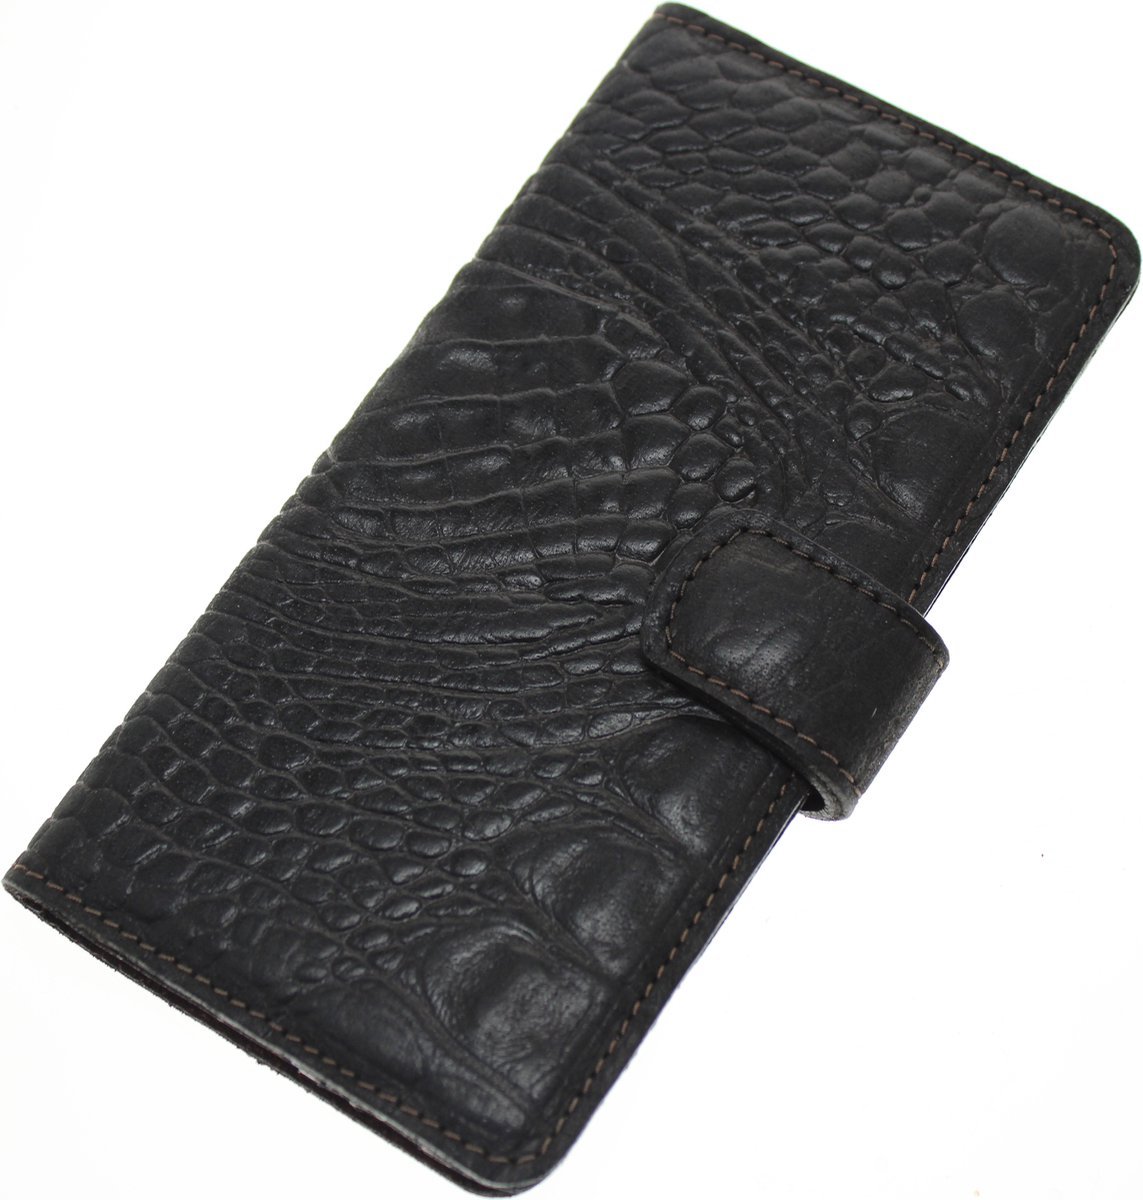 Made-NL Apple iPhone 11 Pro Handgemaakte book case Zwart krokodillenprint robuuste hoesje